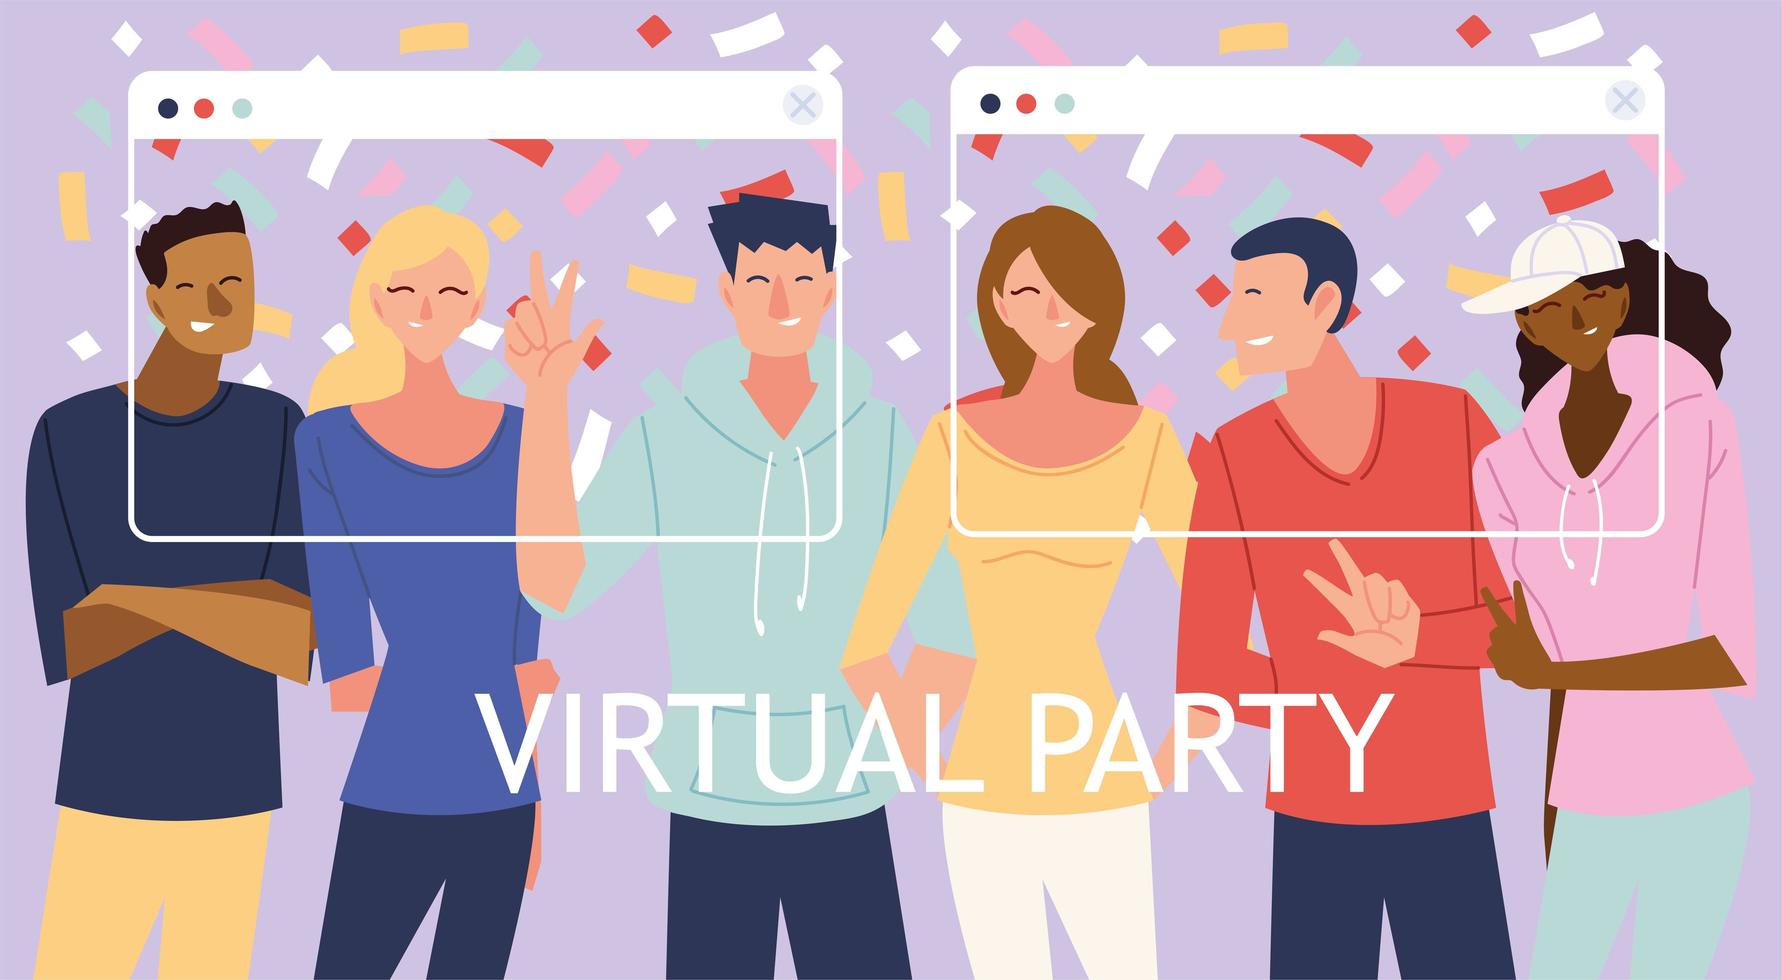 festa virtuale con uomini donne cartoni animati e coriandoli in disegno vettoriale di schermi